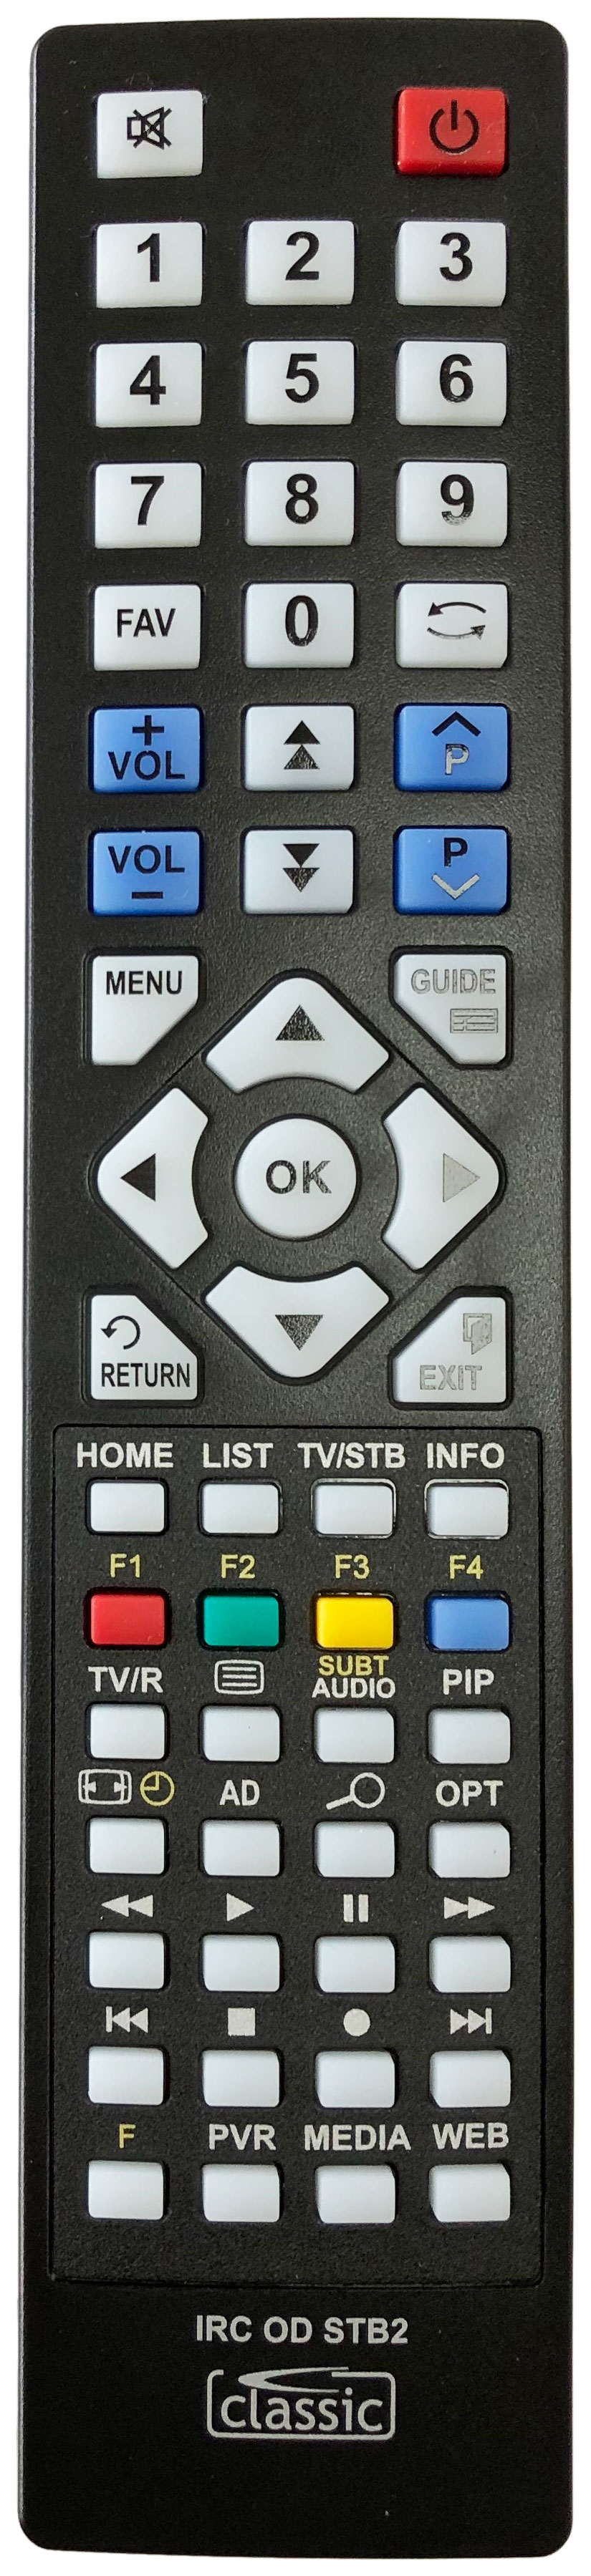 SAGEM DVR 64250T Remote Control